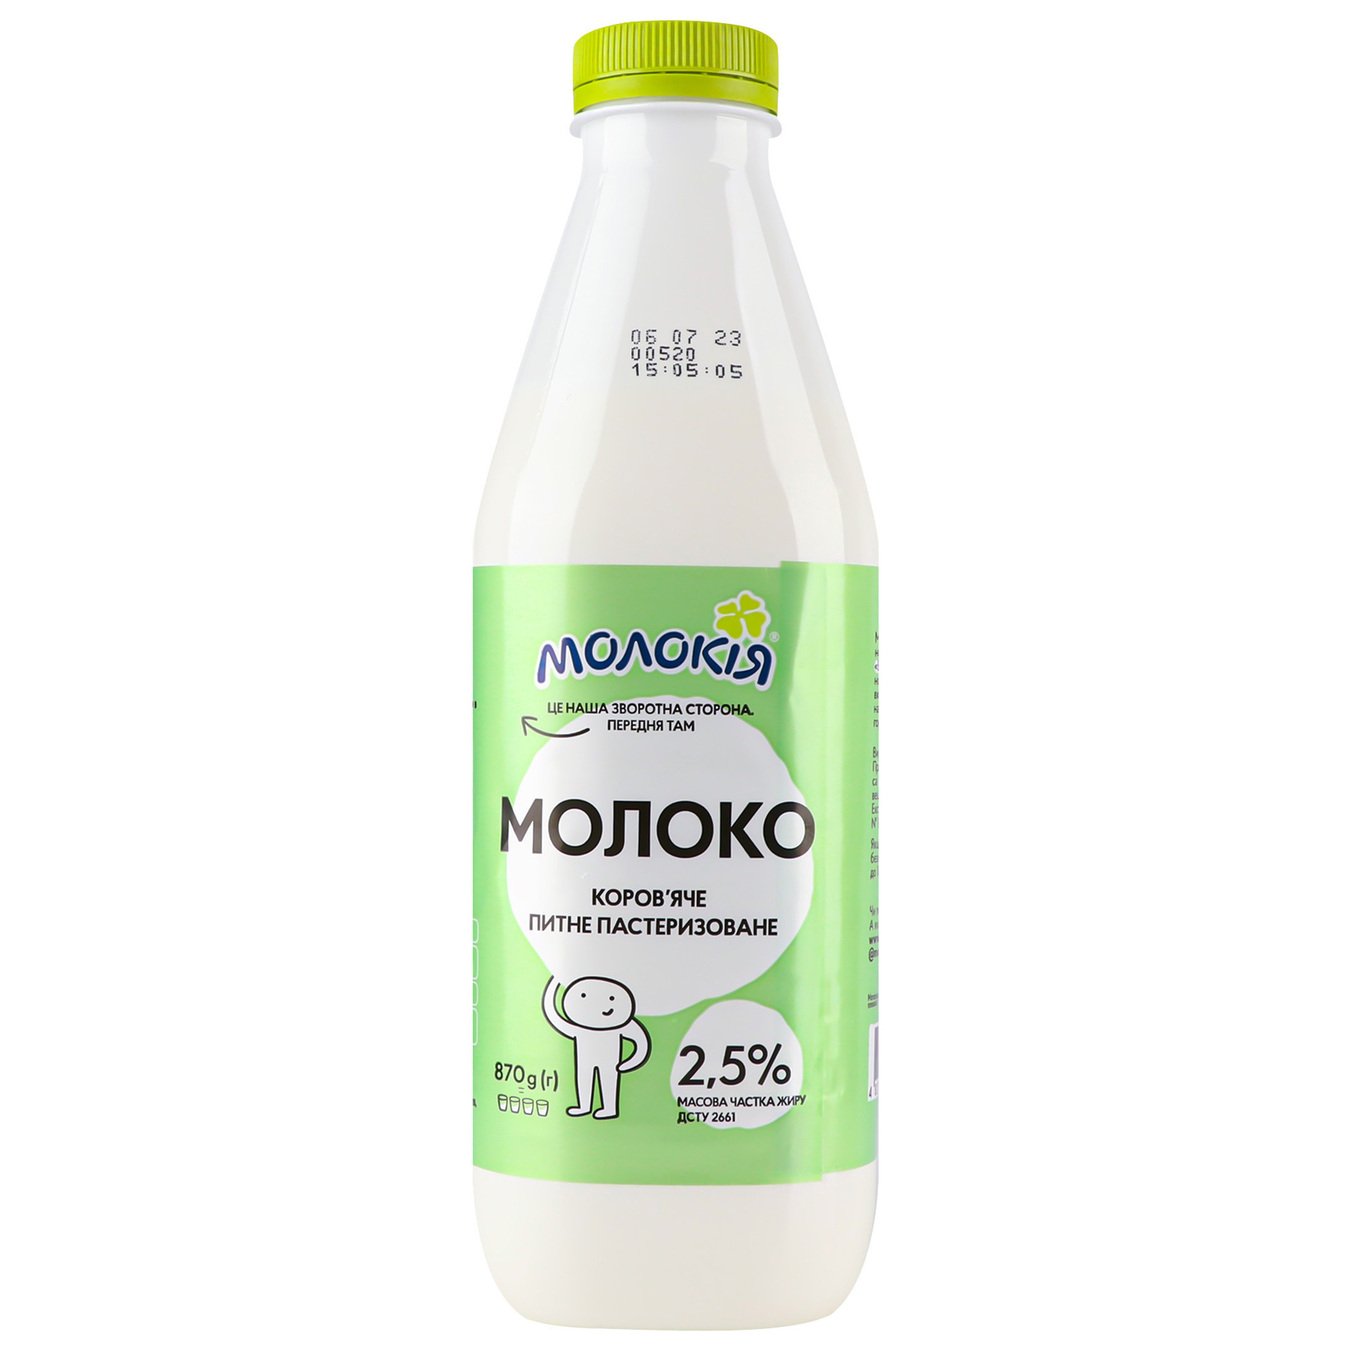 Milk Milk 2.5% 870g 2